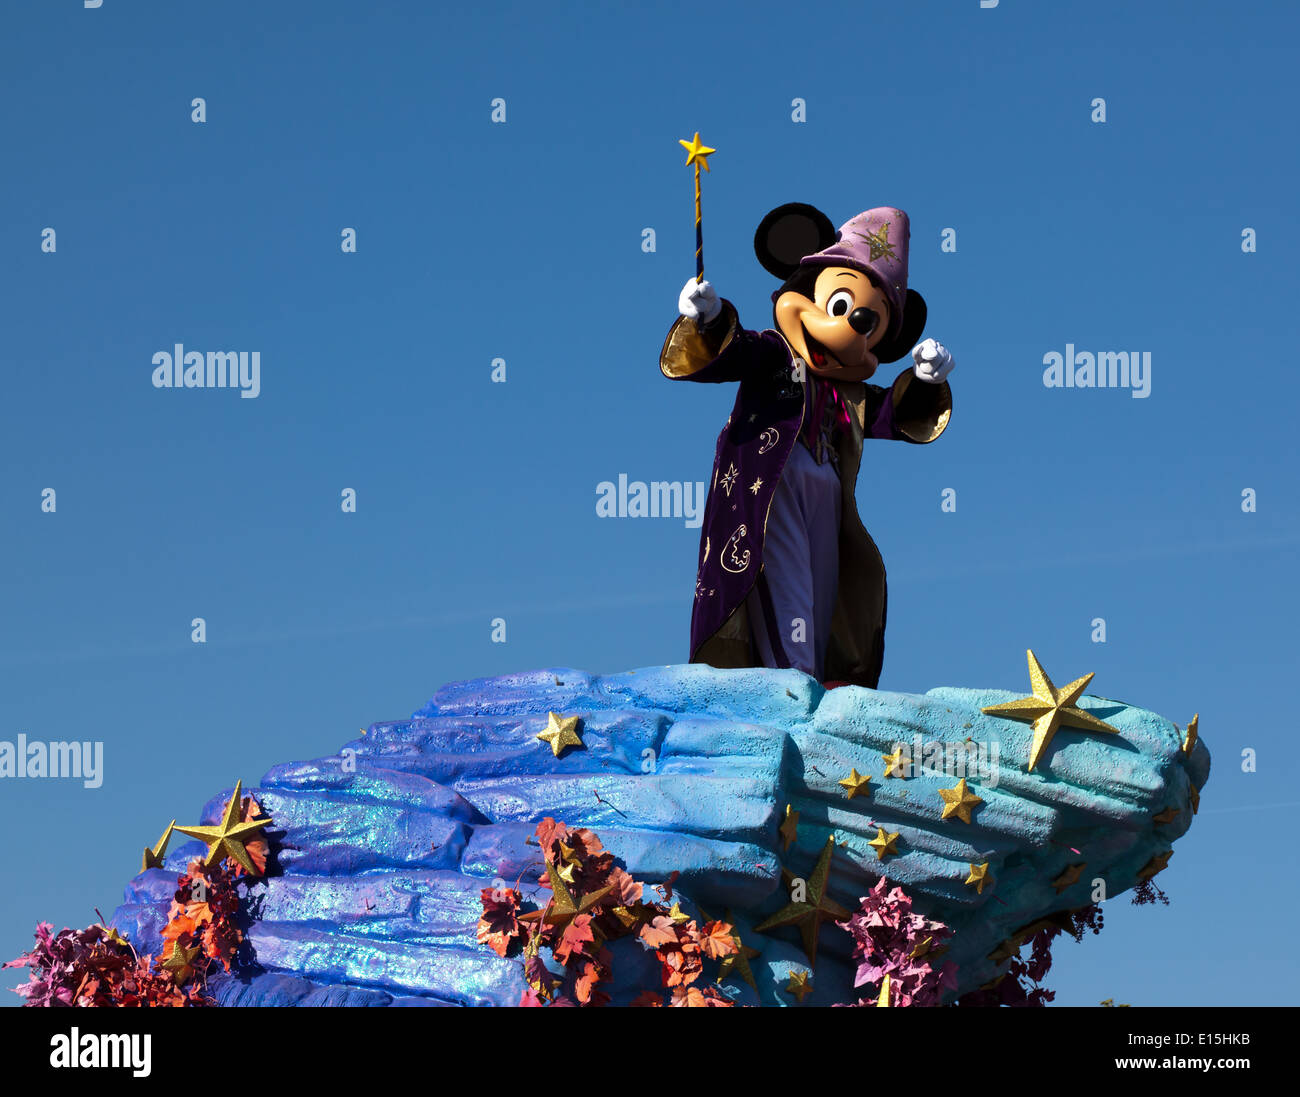 Ein Disney Parade Mit Micky Maus Verkleidet Als Der Zauberlehrling Aus Dem Disney Film Fantasia Stockfotografie Alamy